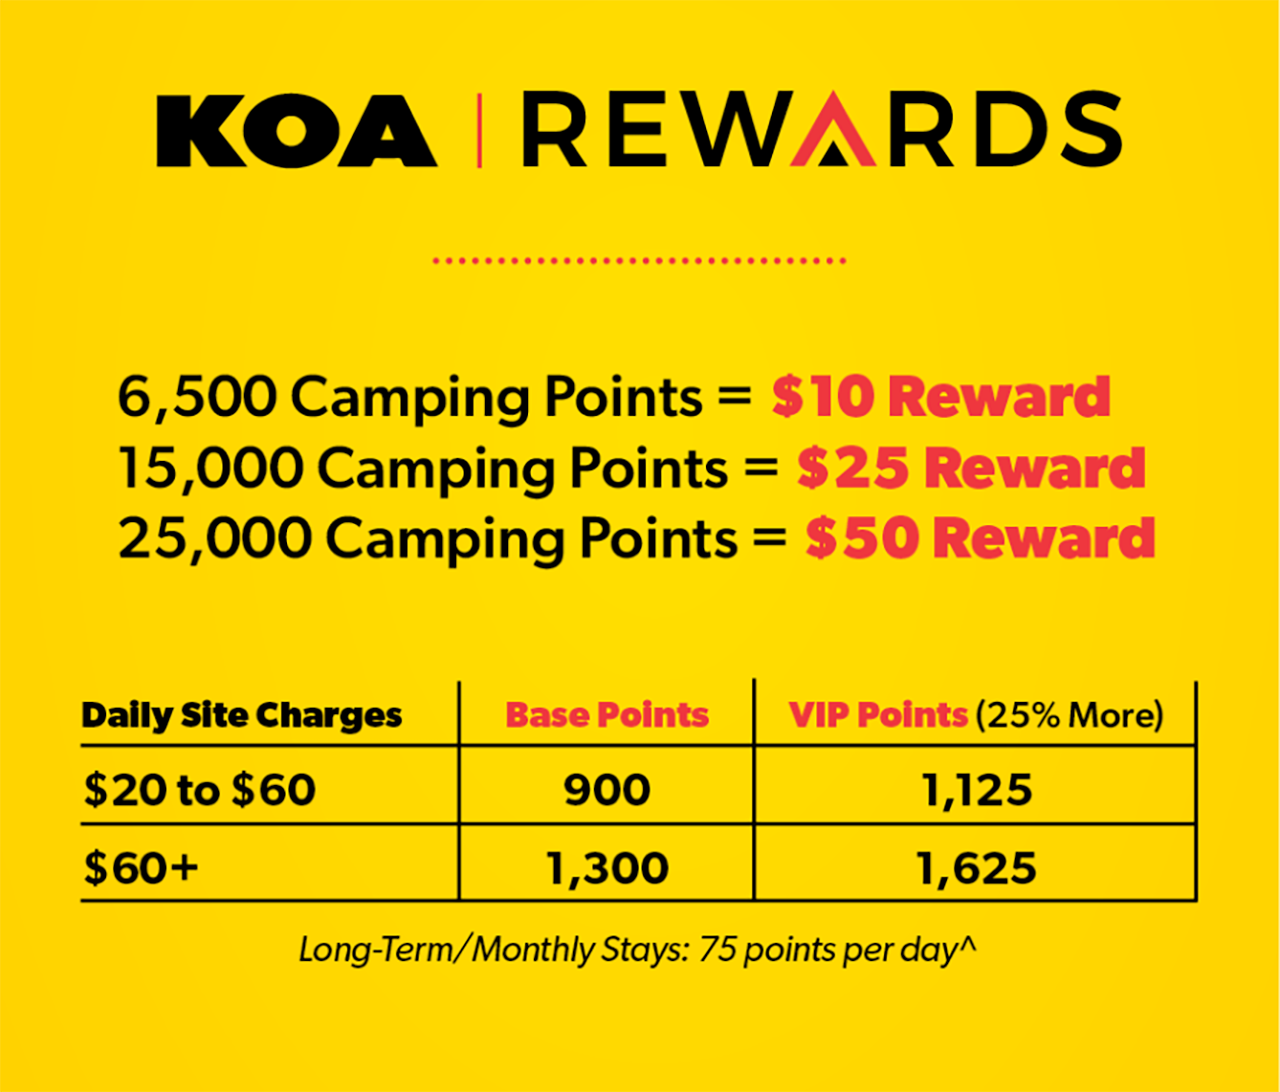 Earning Rewards Points with KOA Rewards